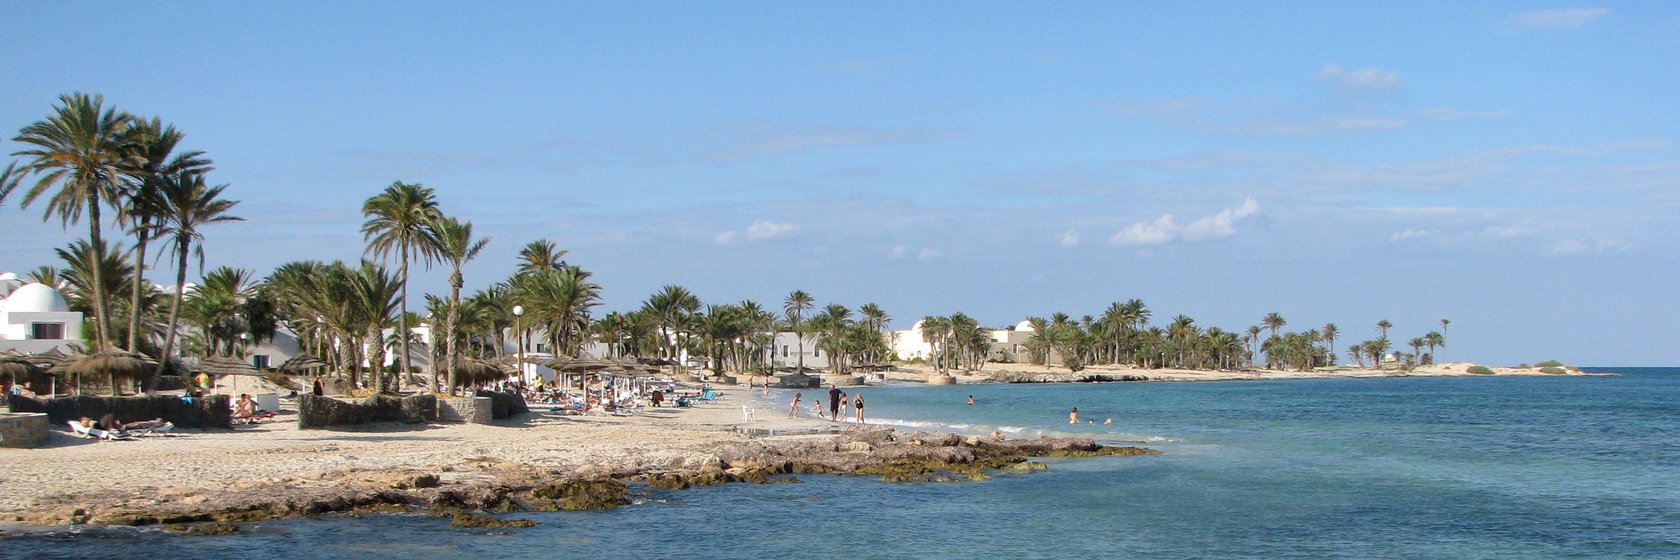 Dovolená Pláž Sidi Mahrez